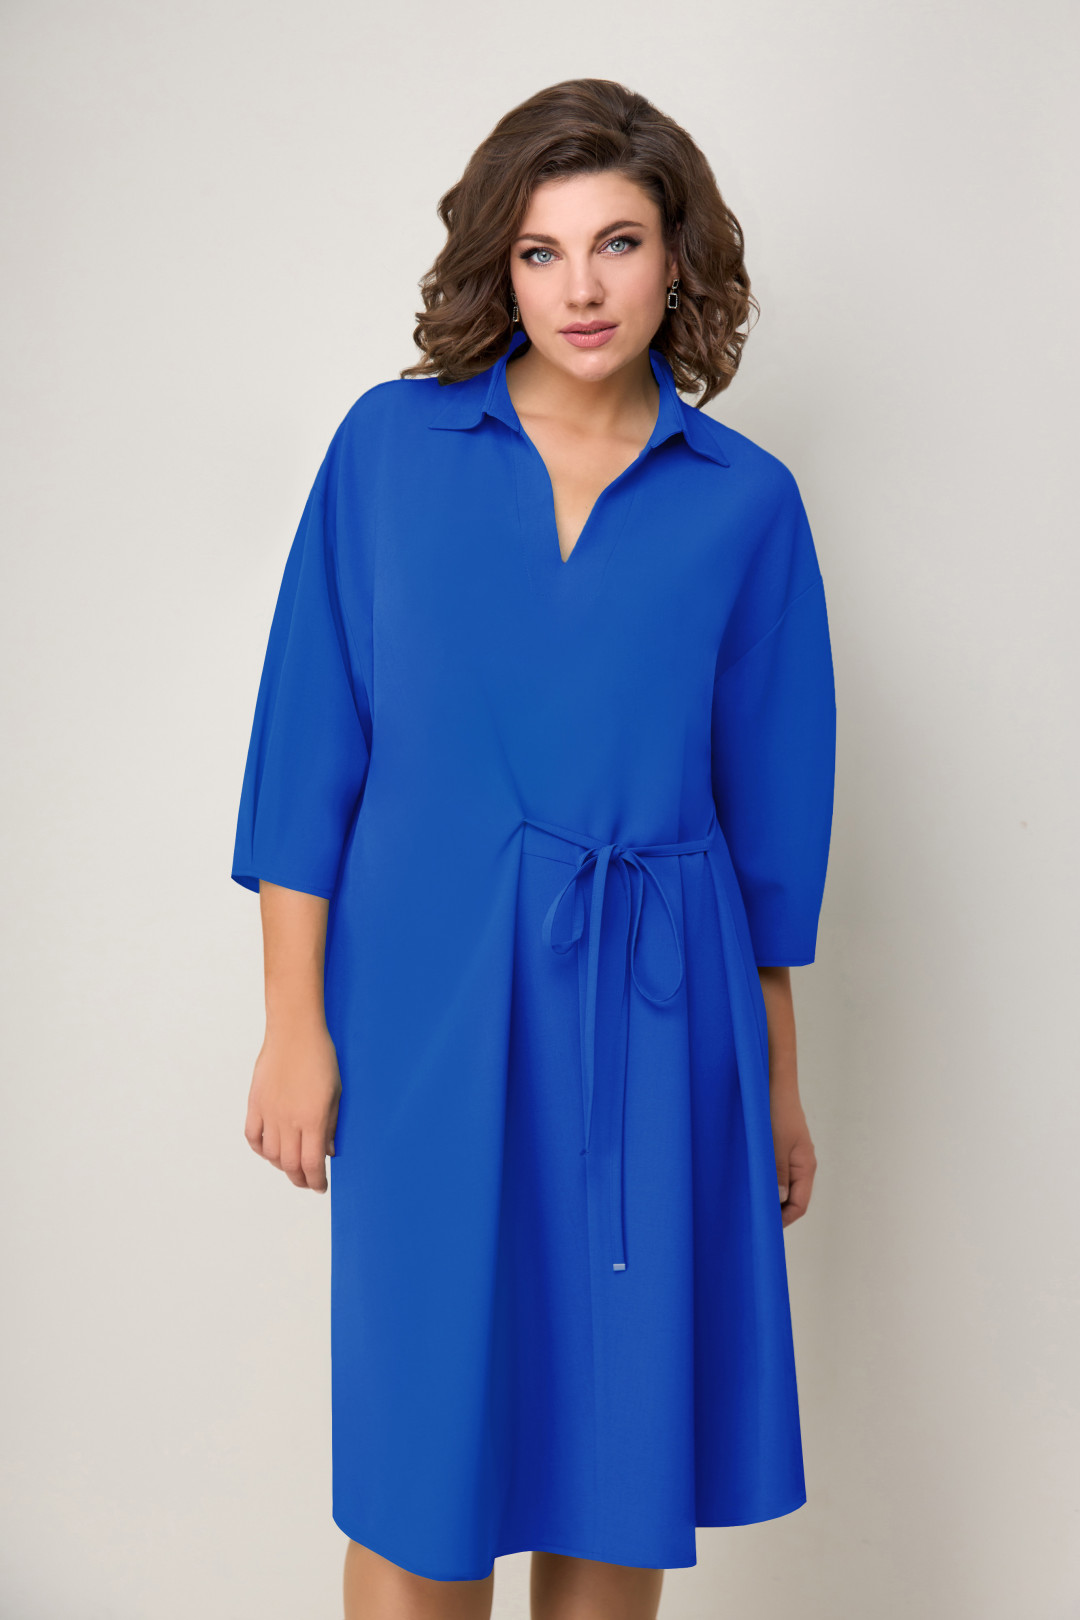 Платье VOLNA 1256 васильково-синий